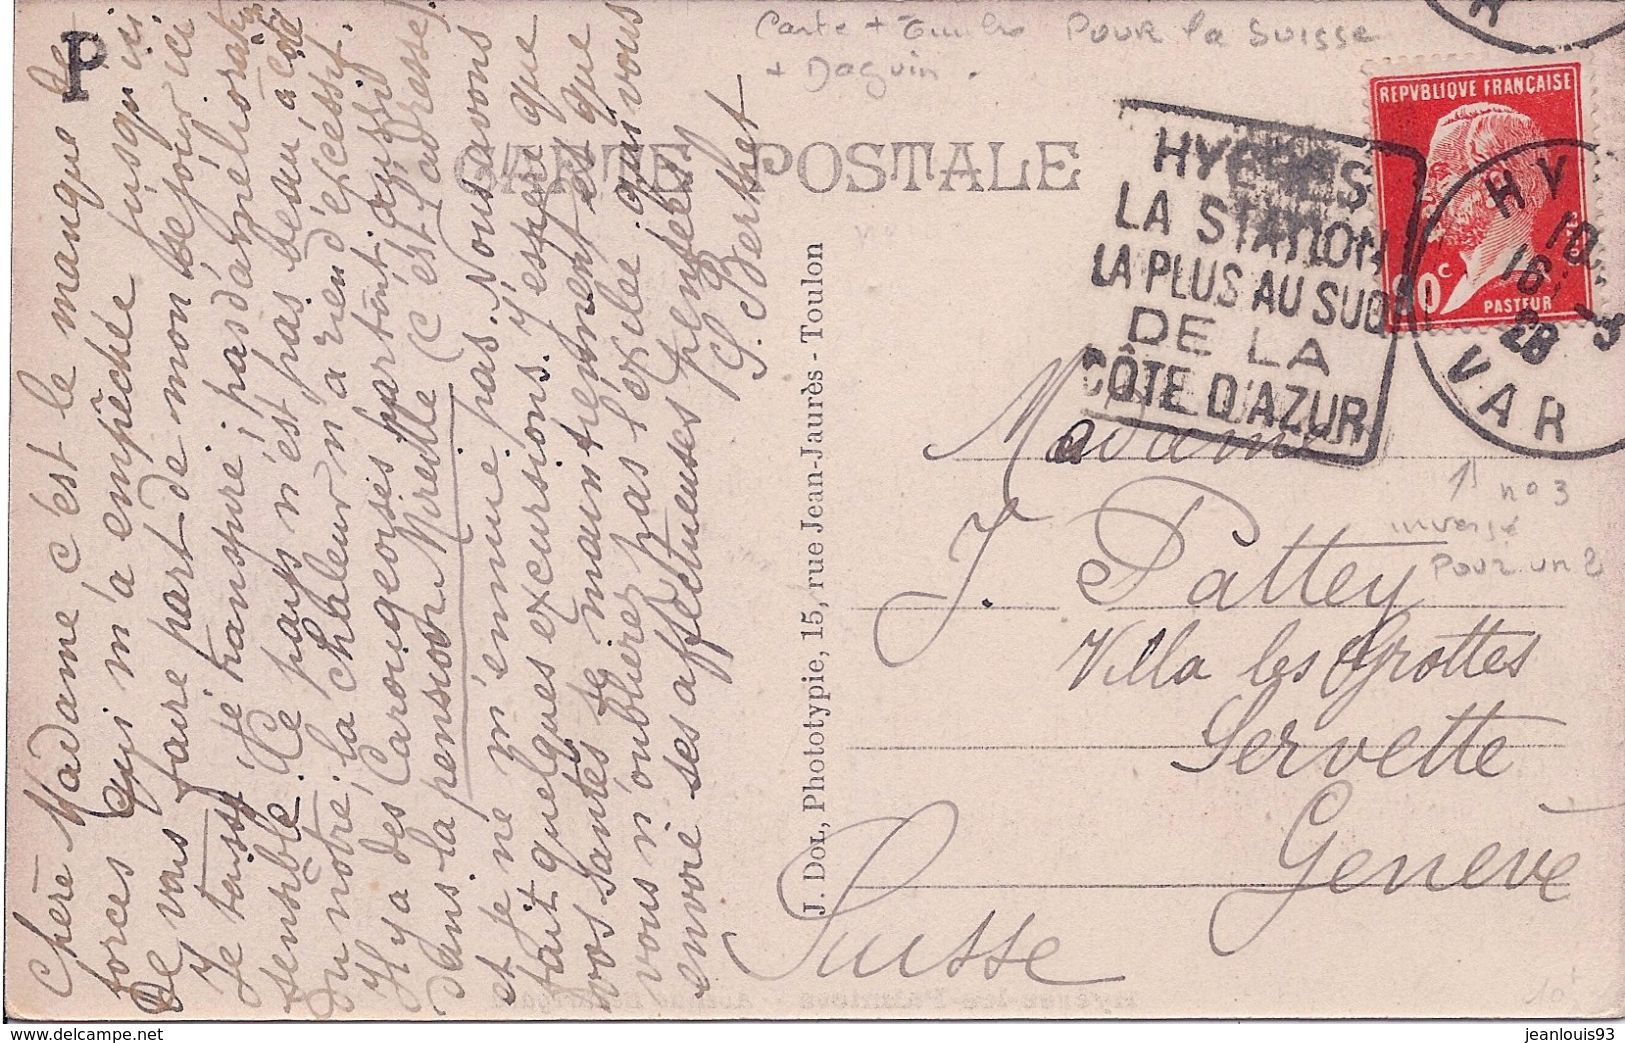 FRANCE - CARTE POSTALE AVEC DAGUIN HYERES POUR LA SUISSE - CURIOSITE LE 3 DE 1928 EMPLOYE A L'ENVERS POUR UN 2 - RARE - Lettres & Documents